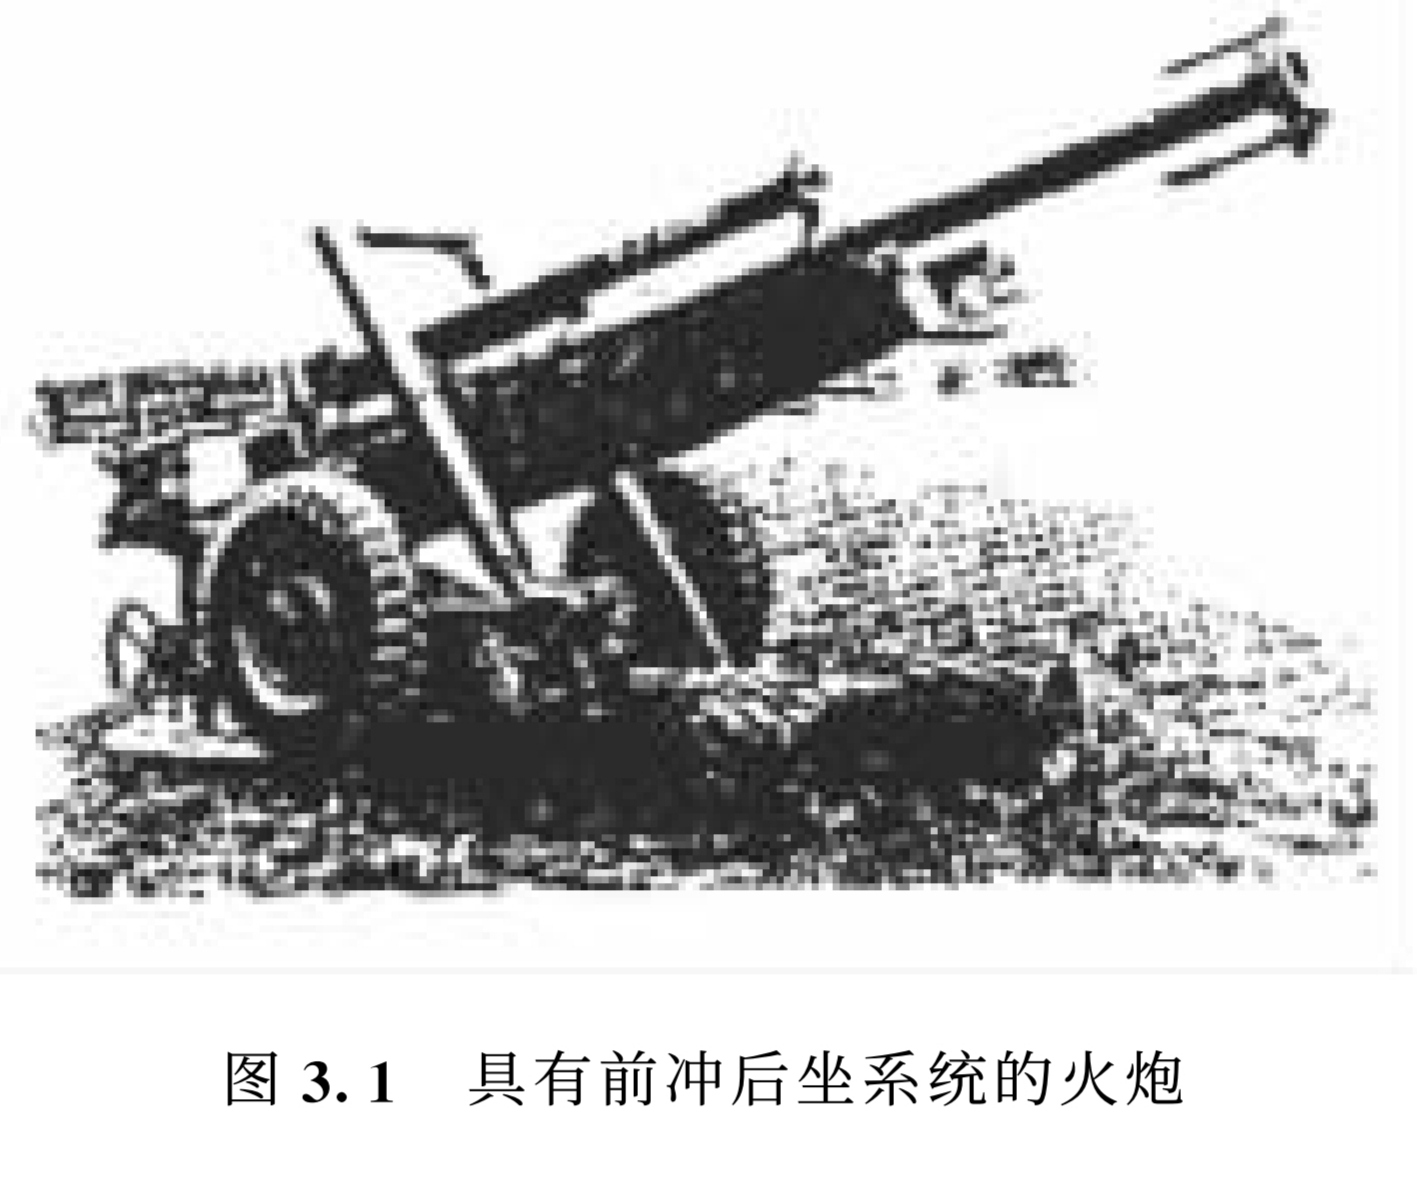 古代大炮的原理示意图-图库-五毛网